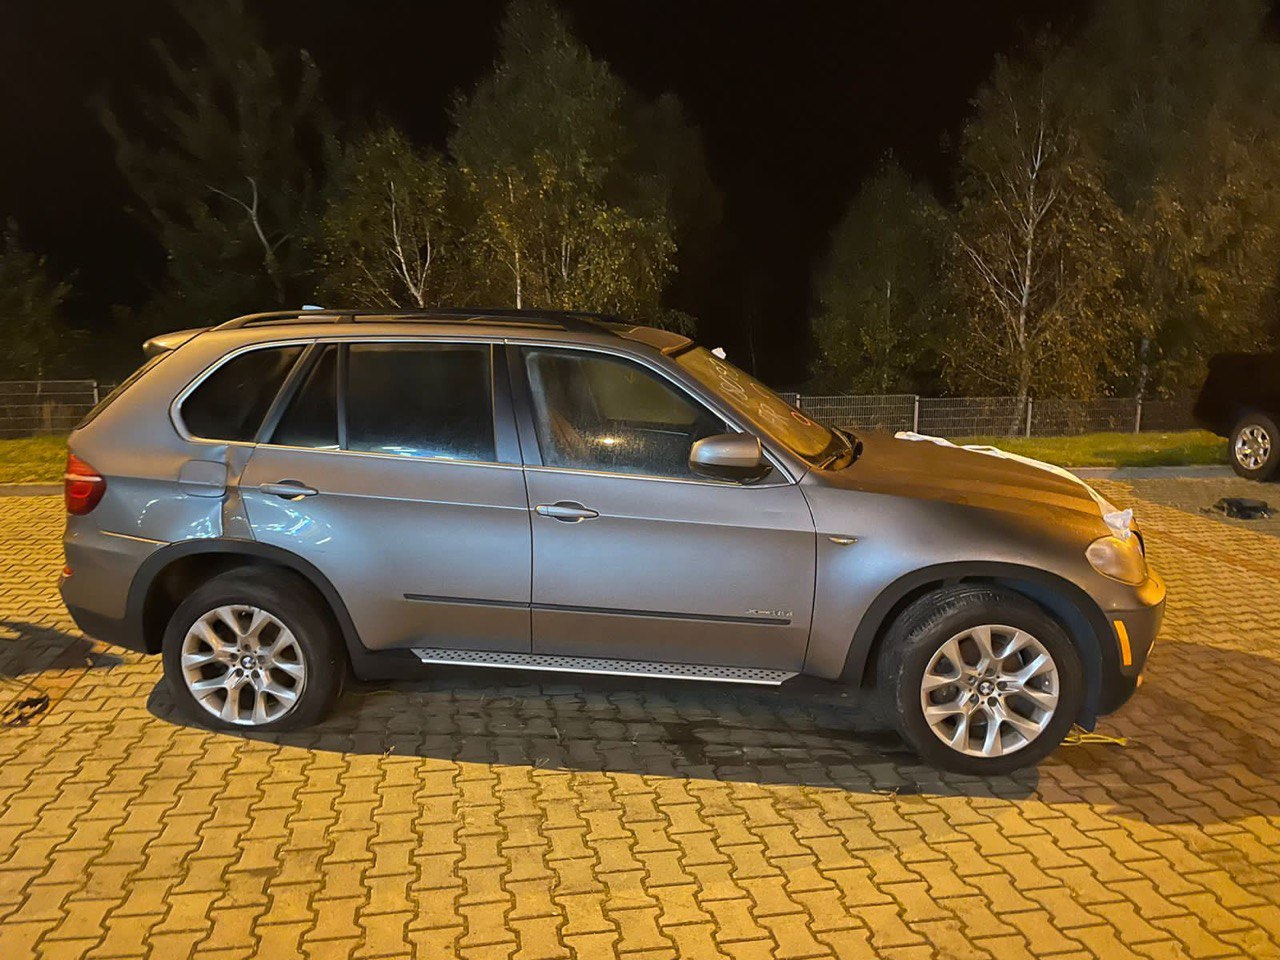 Львовская таможня изъяла три люксовых автомобиля стоимостью 700 000 грн